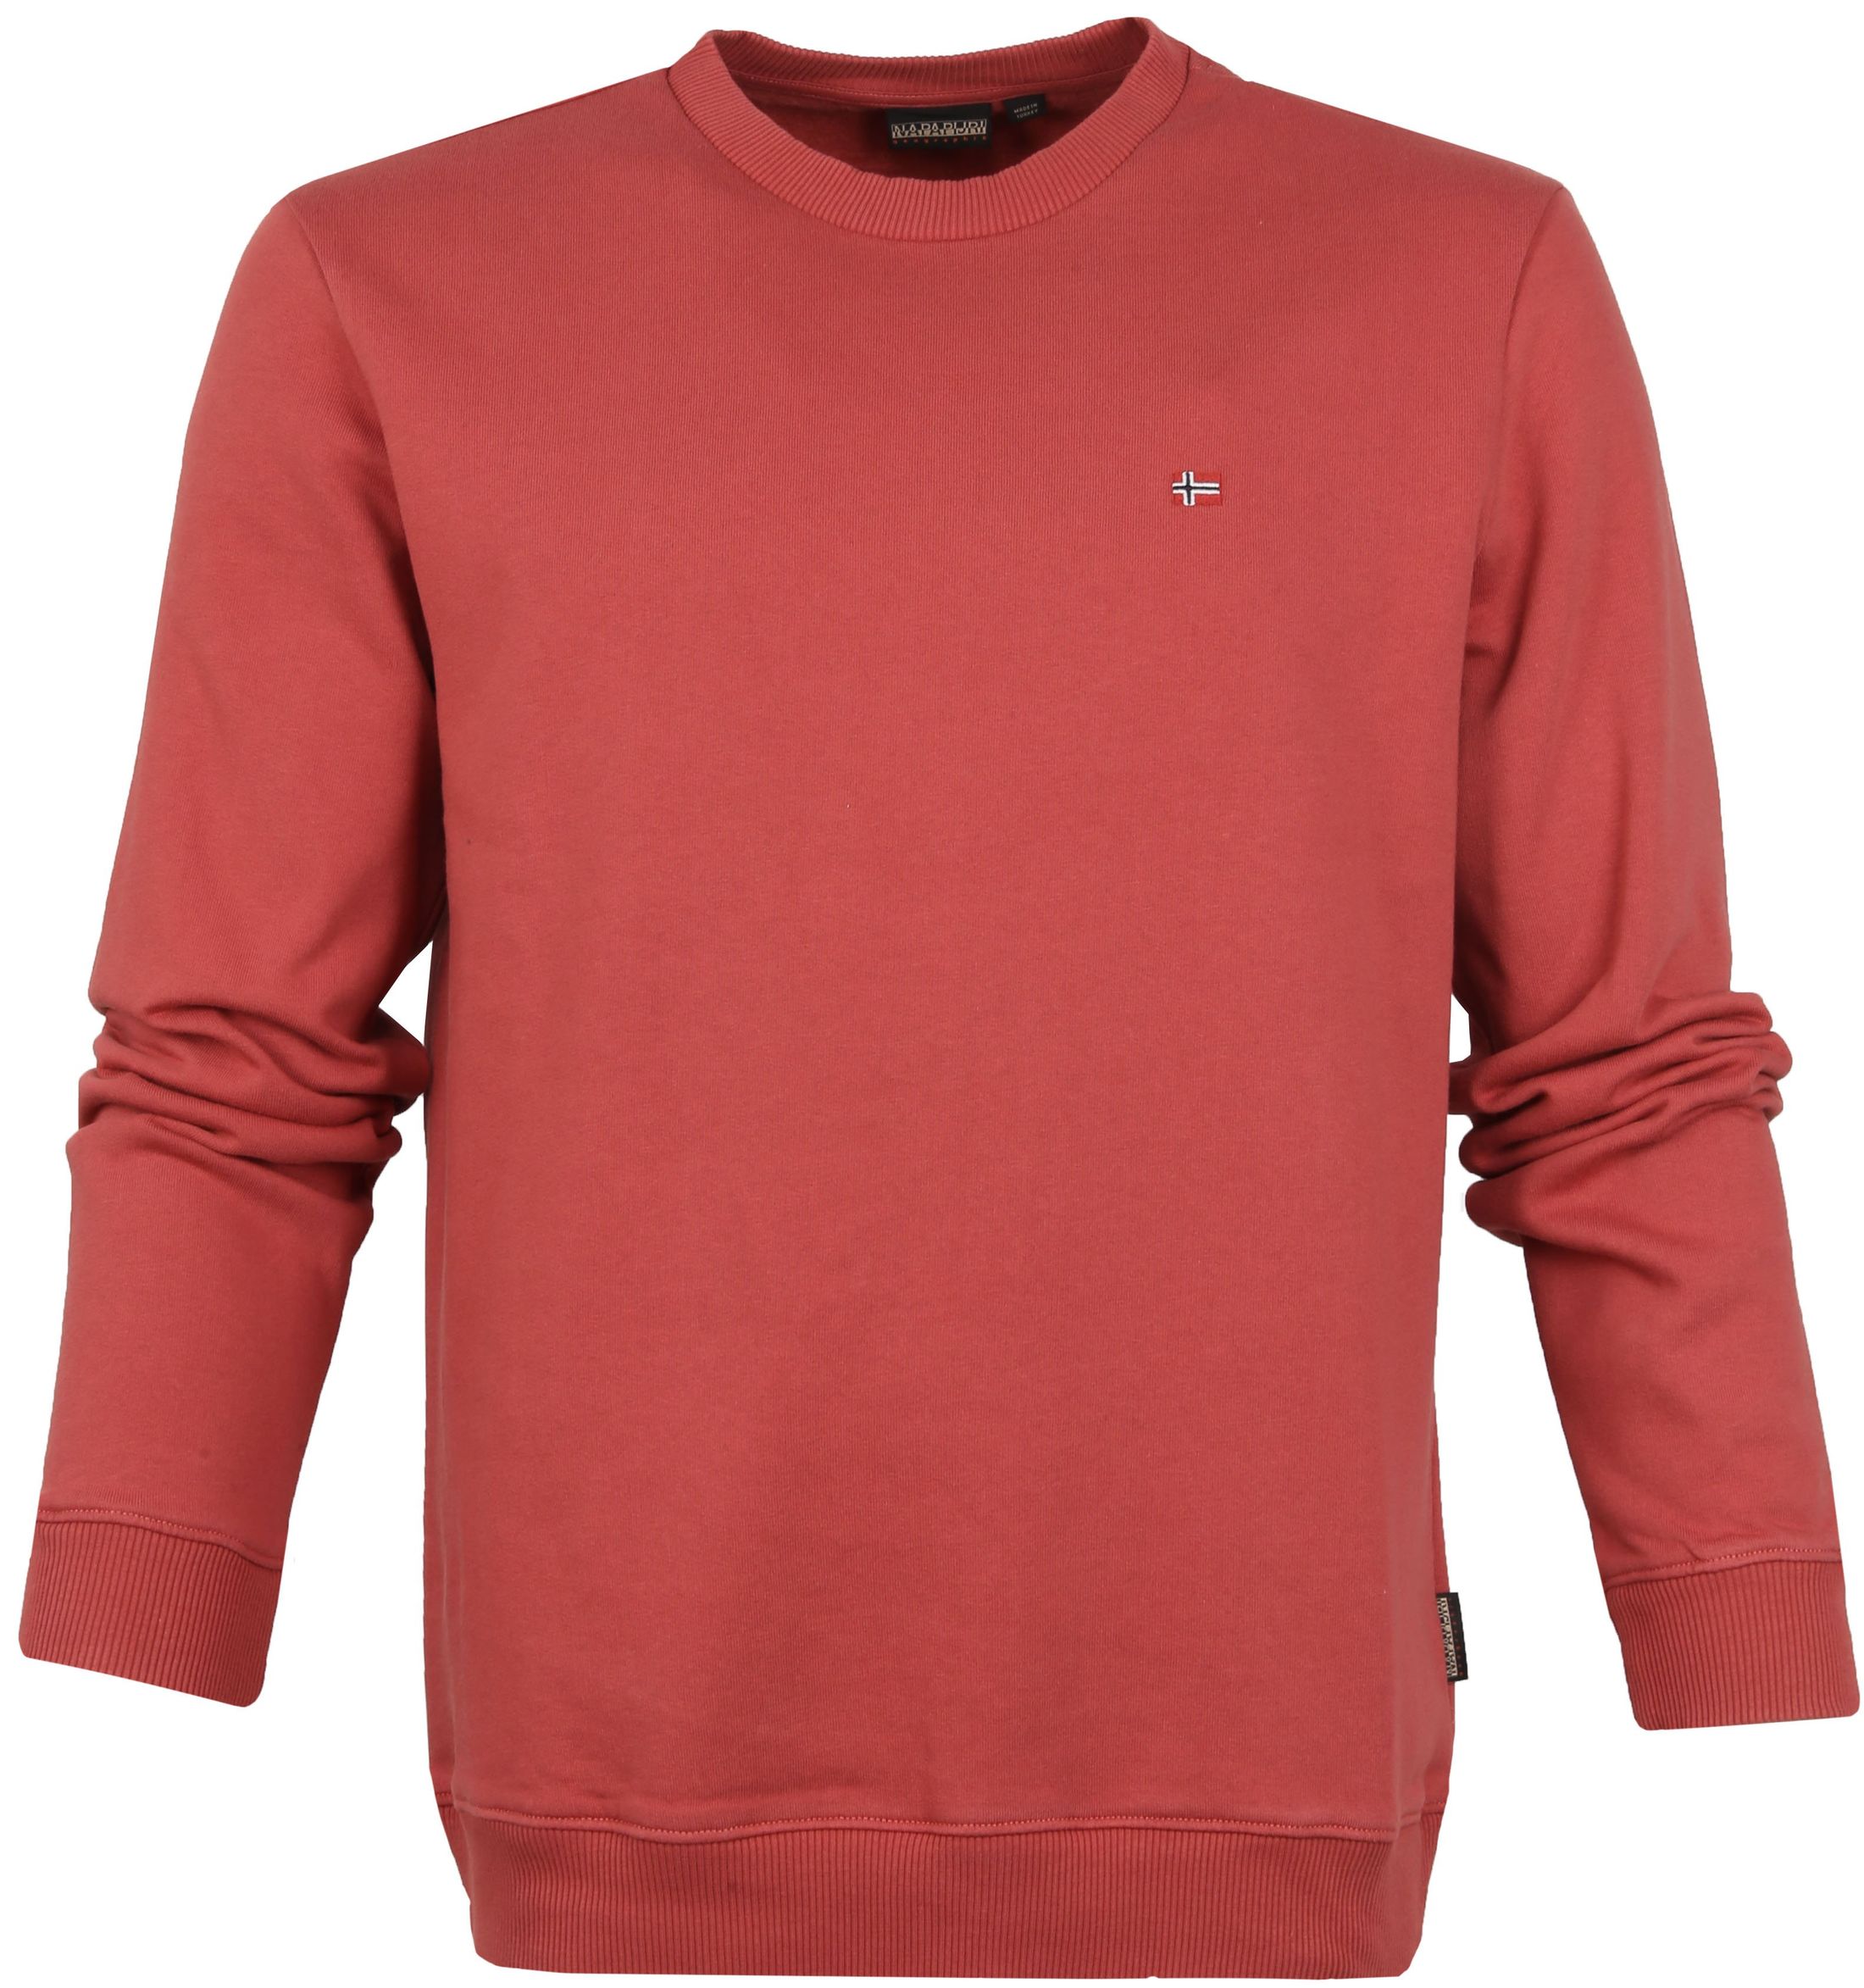 Napapijri Sweater Red size L